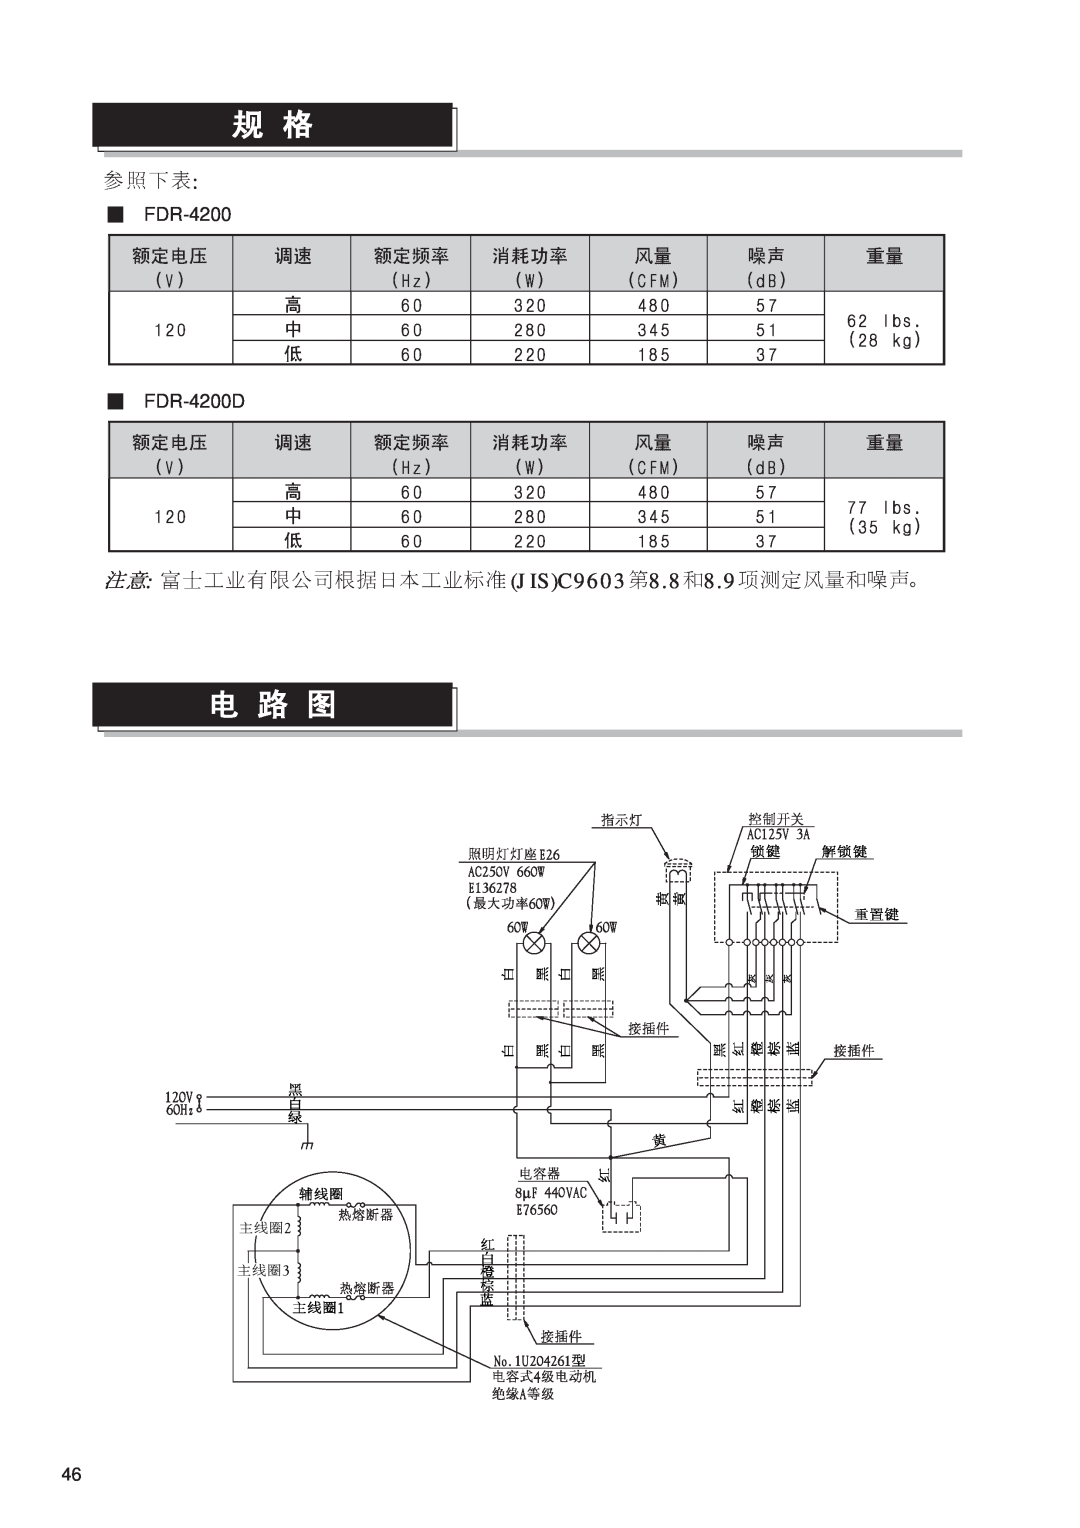 Fujioh operation manual JISC96038.88.9, FDR-4200 FDR-4200D 